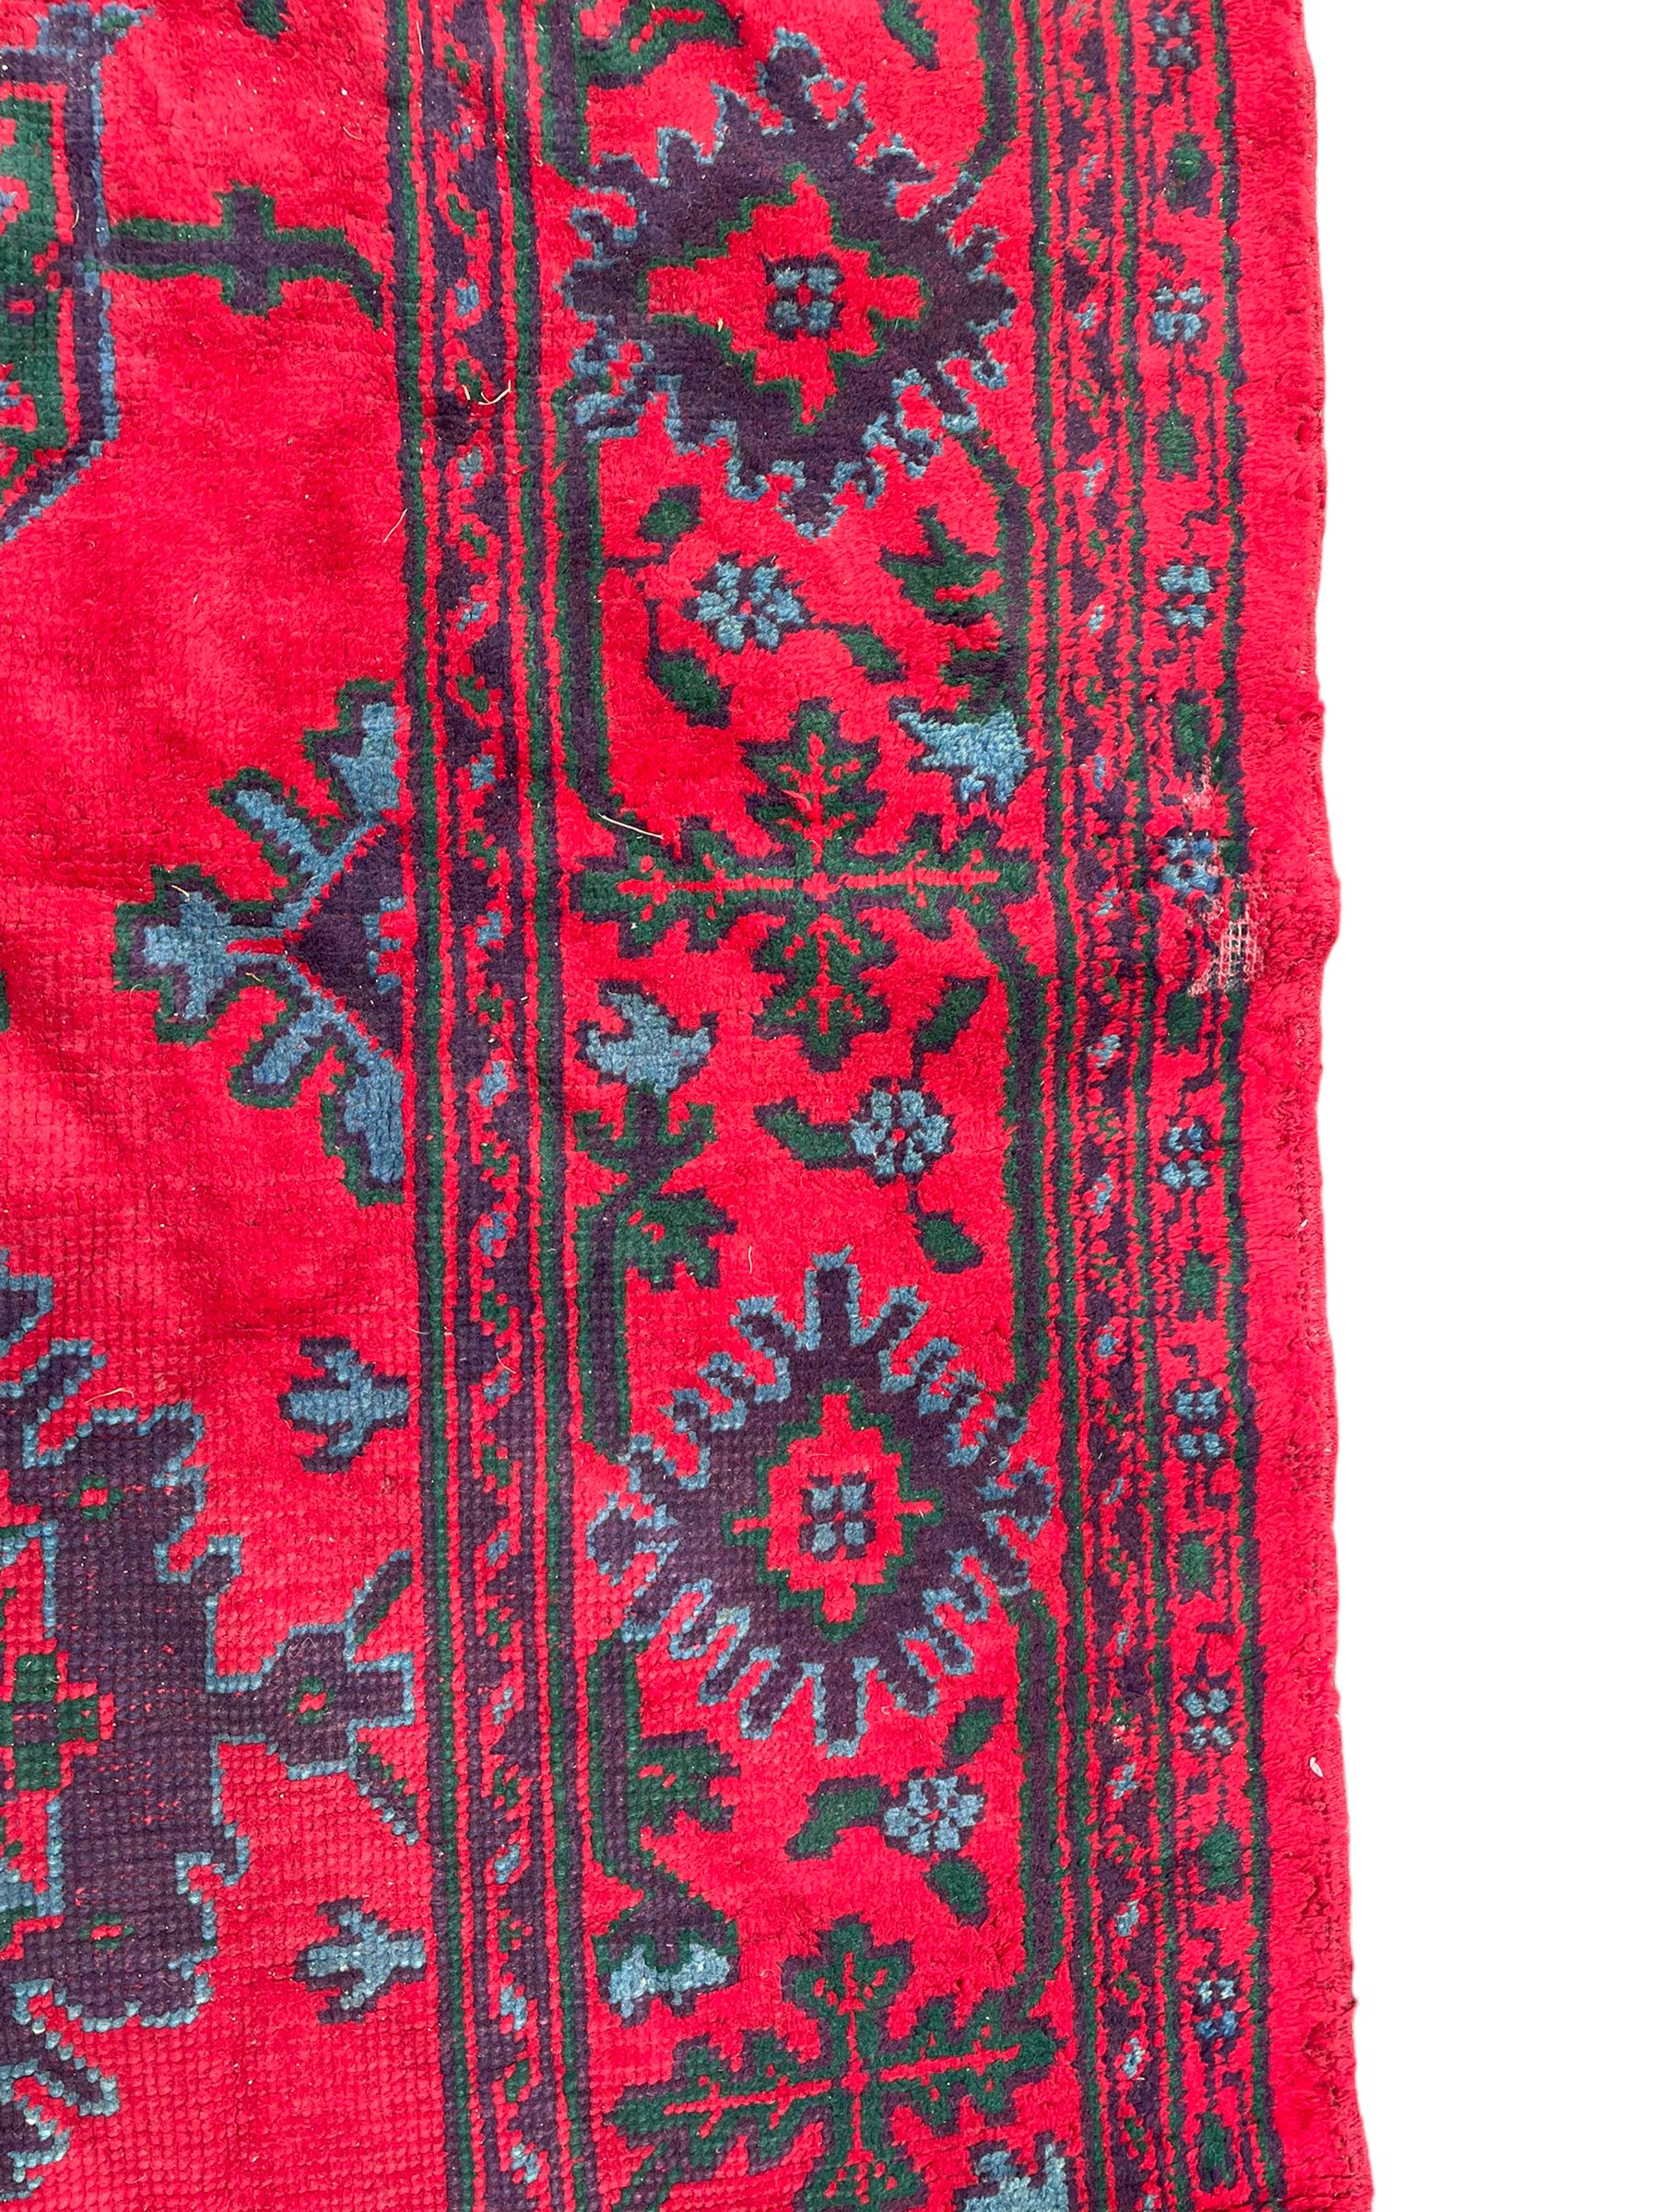 Early 20th century Western Anatolia Turkish Oushak crimson ground carpet - Image 2 of 10